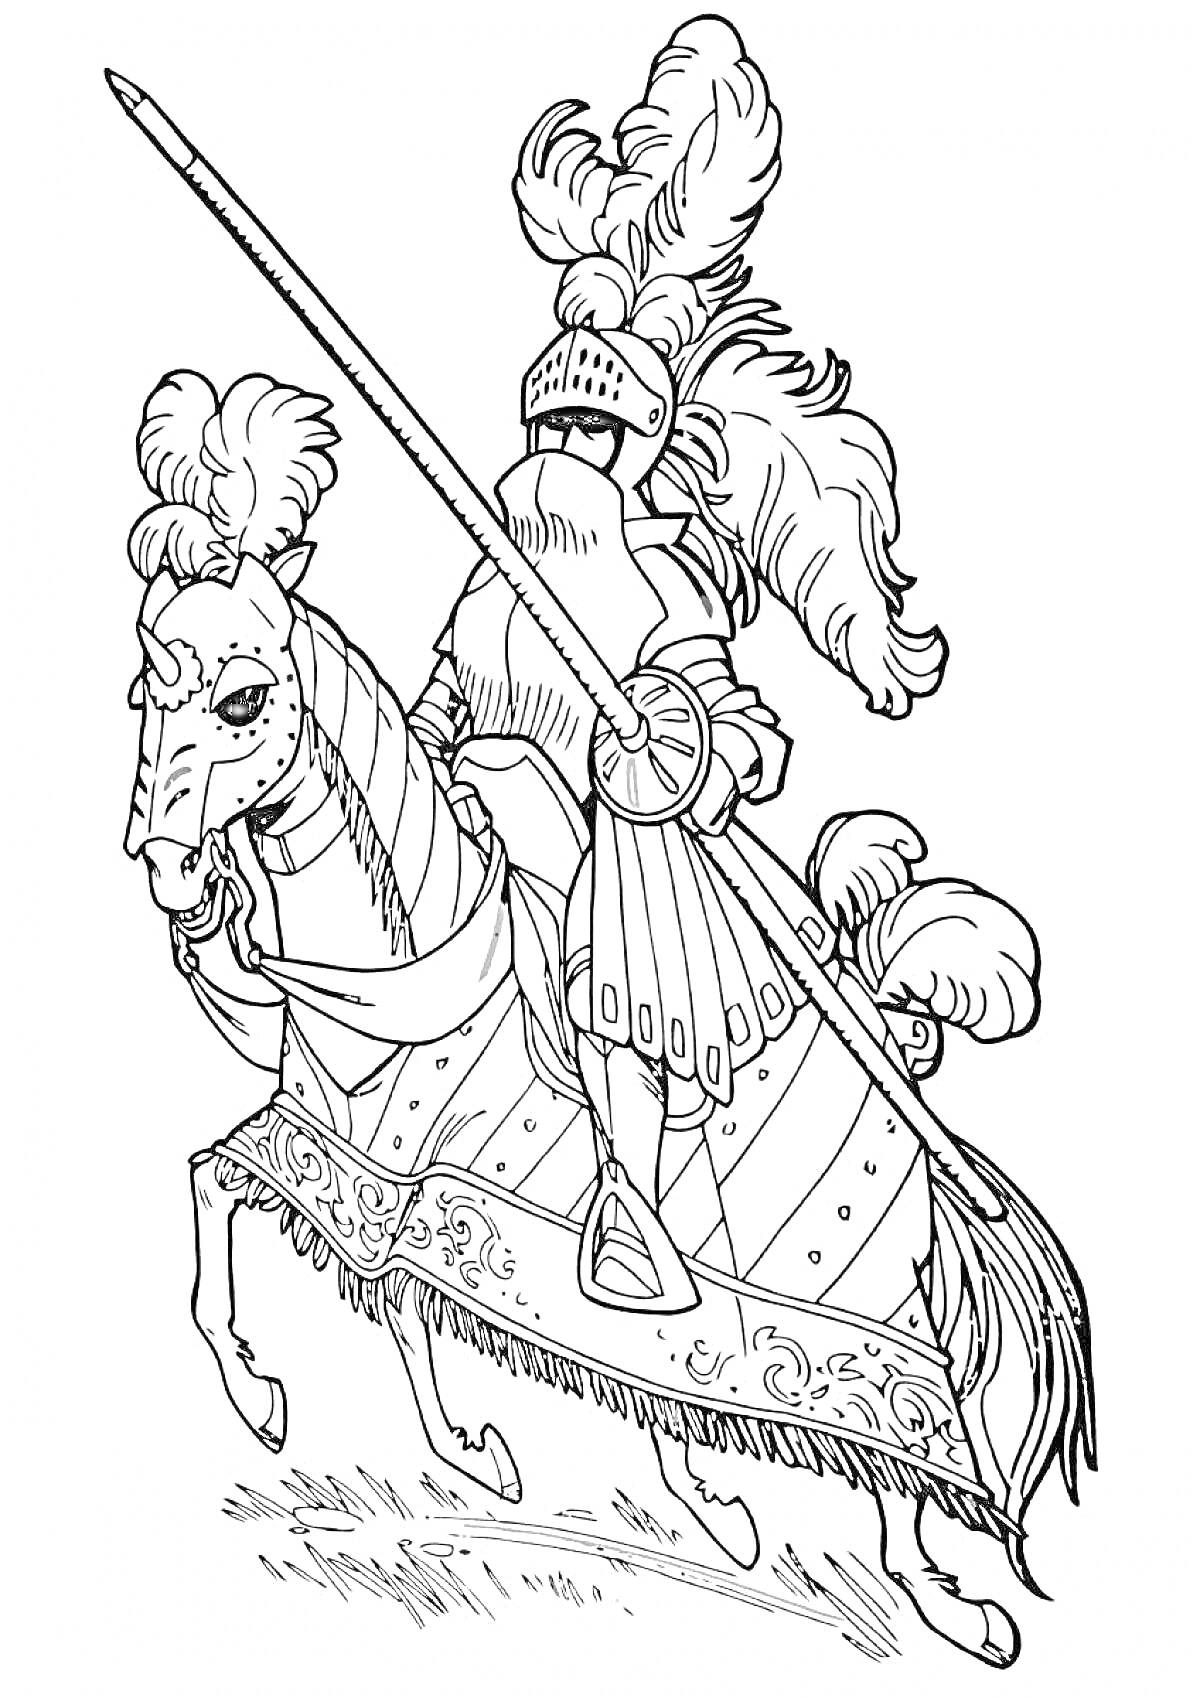 Раскраска Рыцарь на коне с копьем, верхом на лошади с украшенным седлом, с перьями на шлеме и доспехах